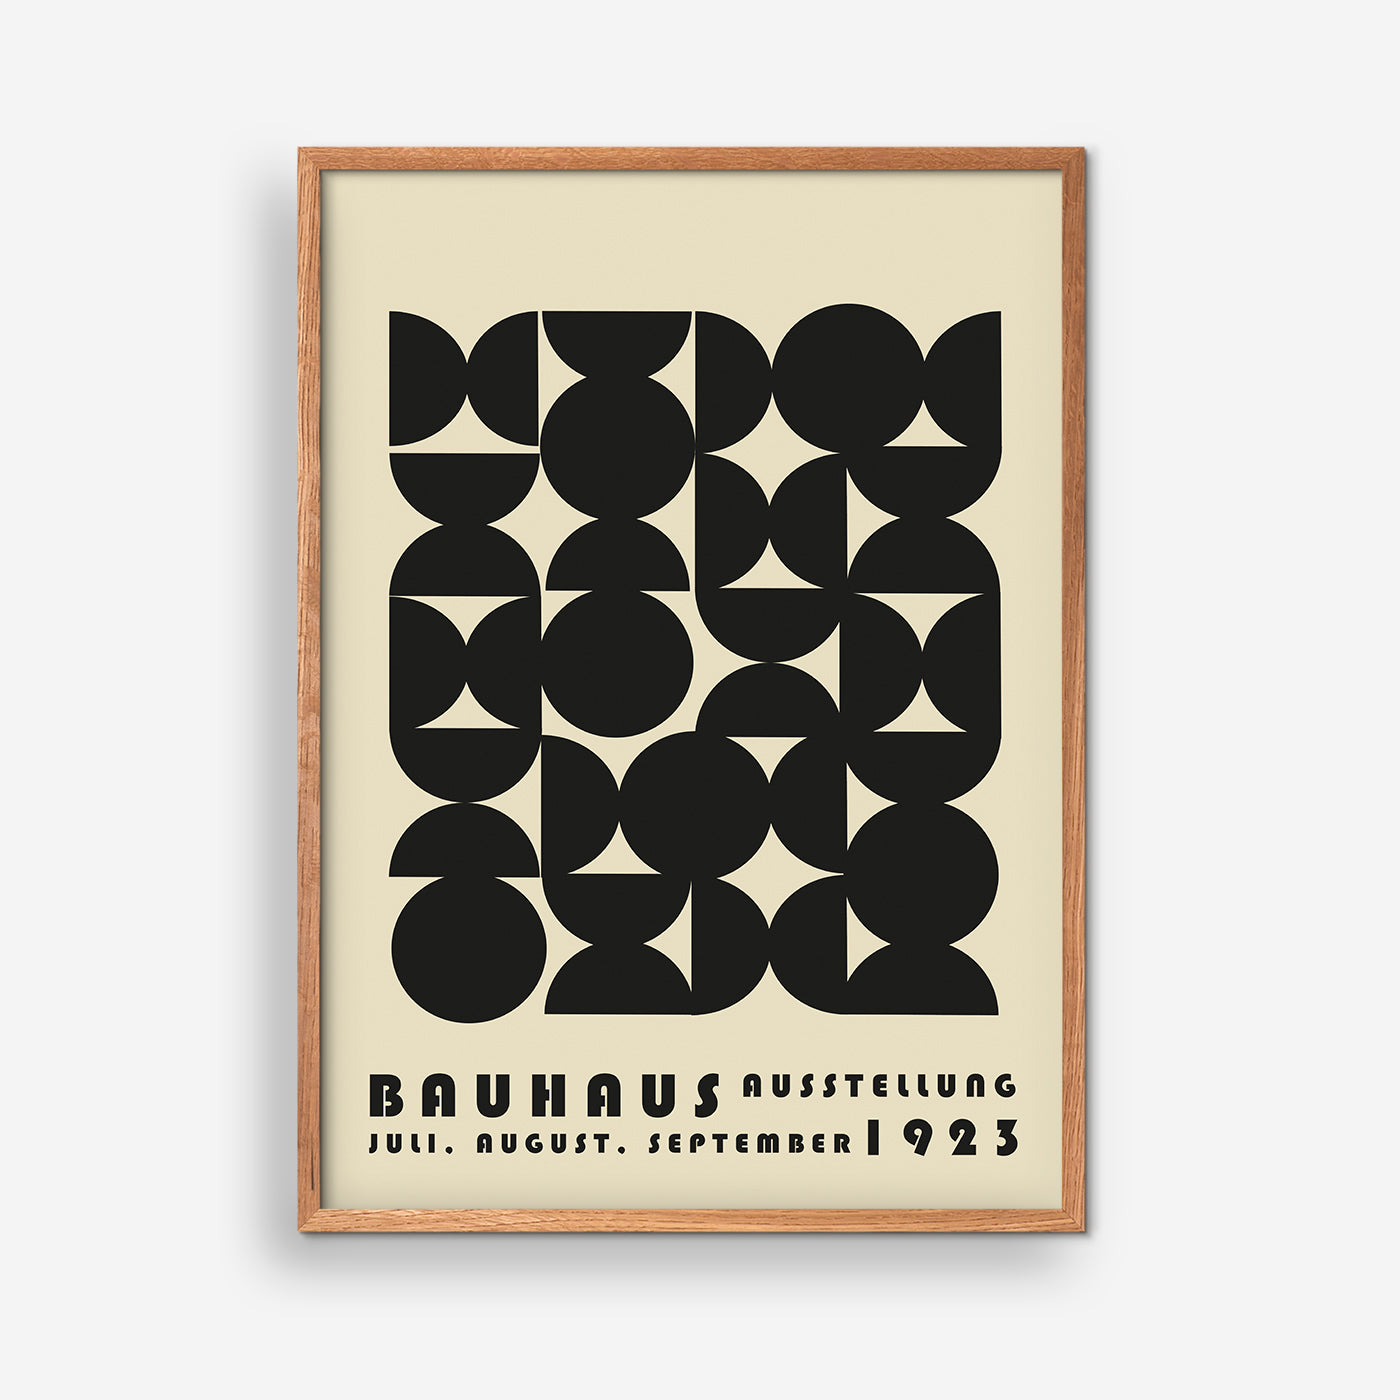 Bauhaus Ausstellung July-September 1923